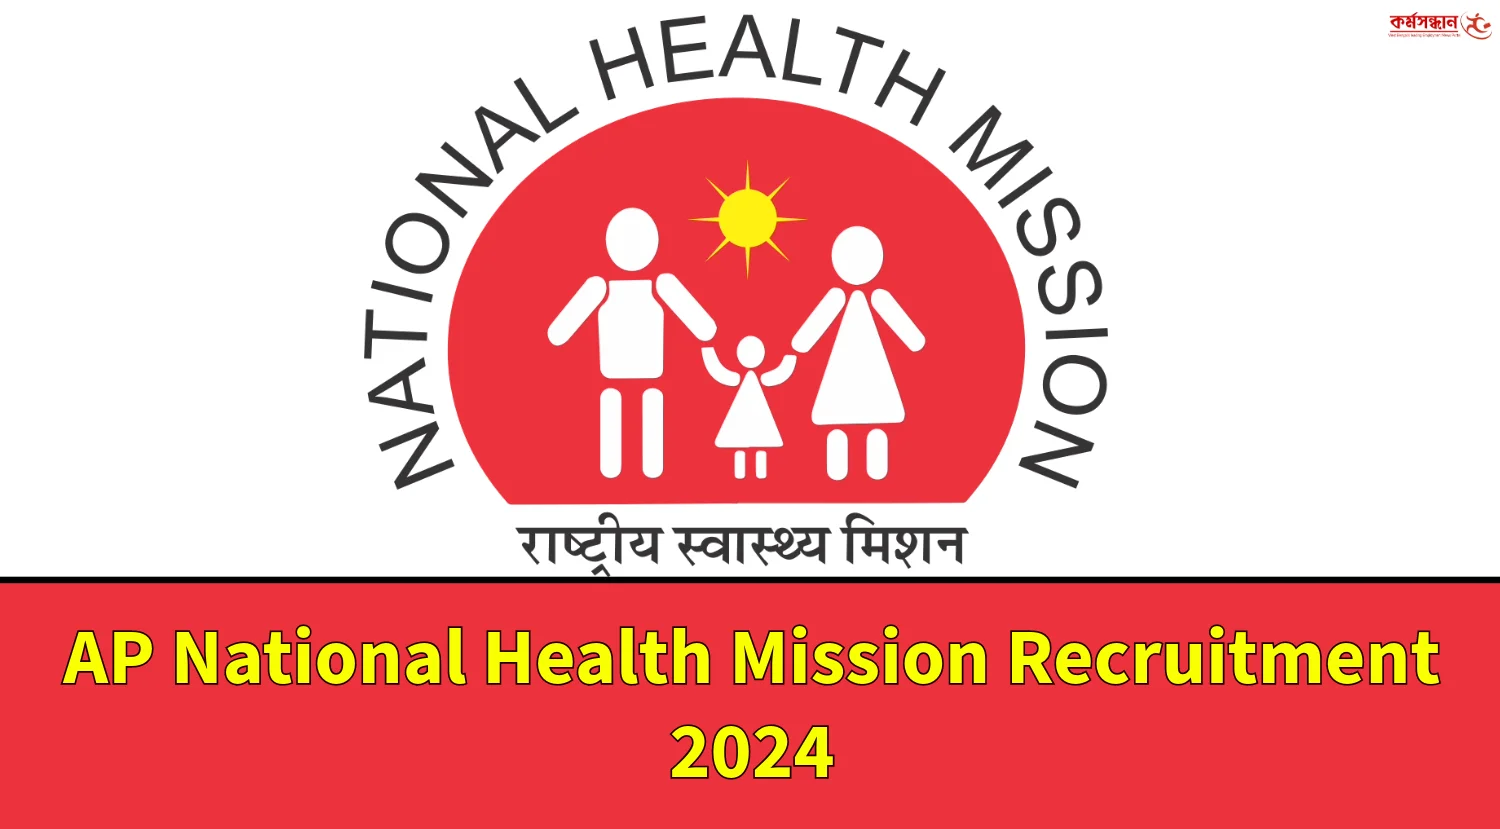 राष्ट्रीय स्वास्थ्य मिशन , जिला स्वास्थ्य समिति जशपुर के रिक्त संविदा पद  हेतु पात्र-अपात्र सूची जारी